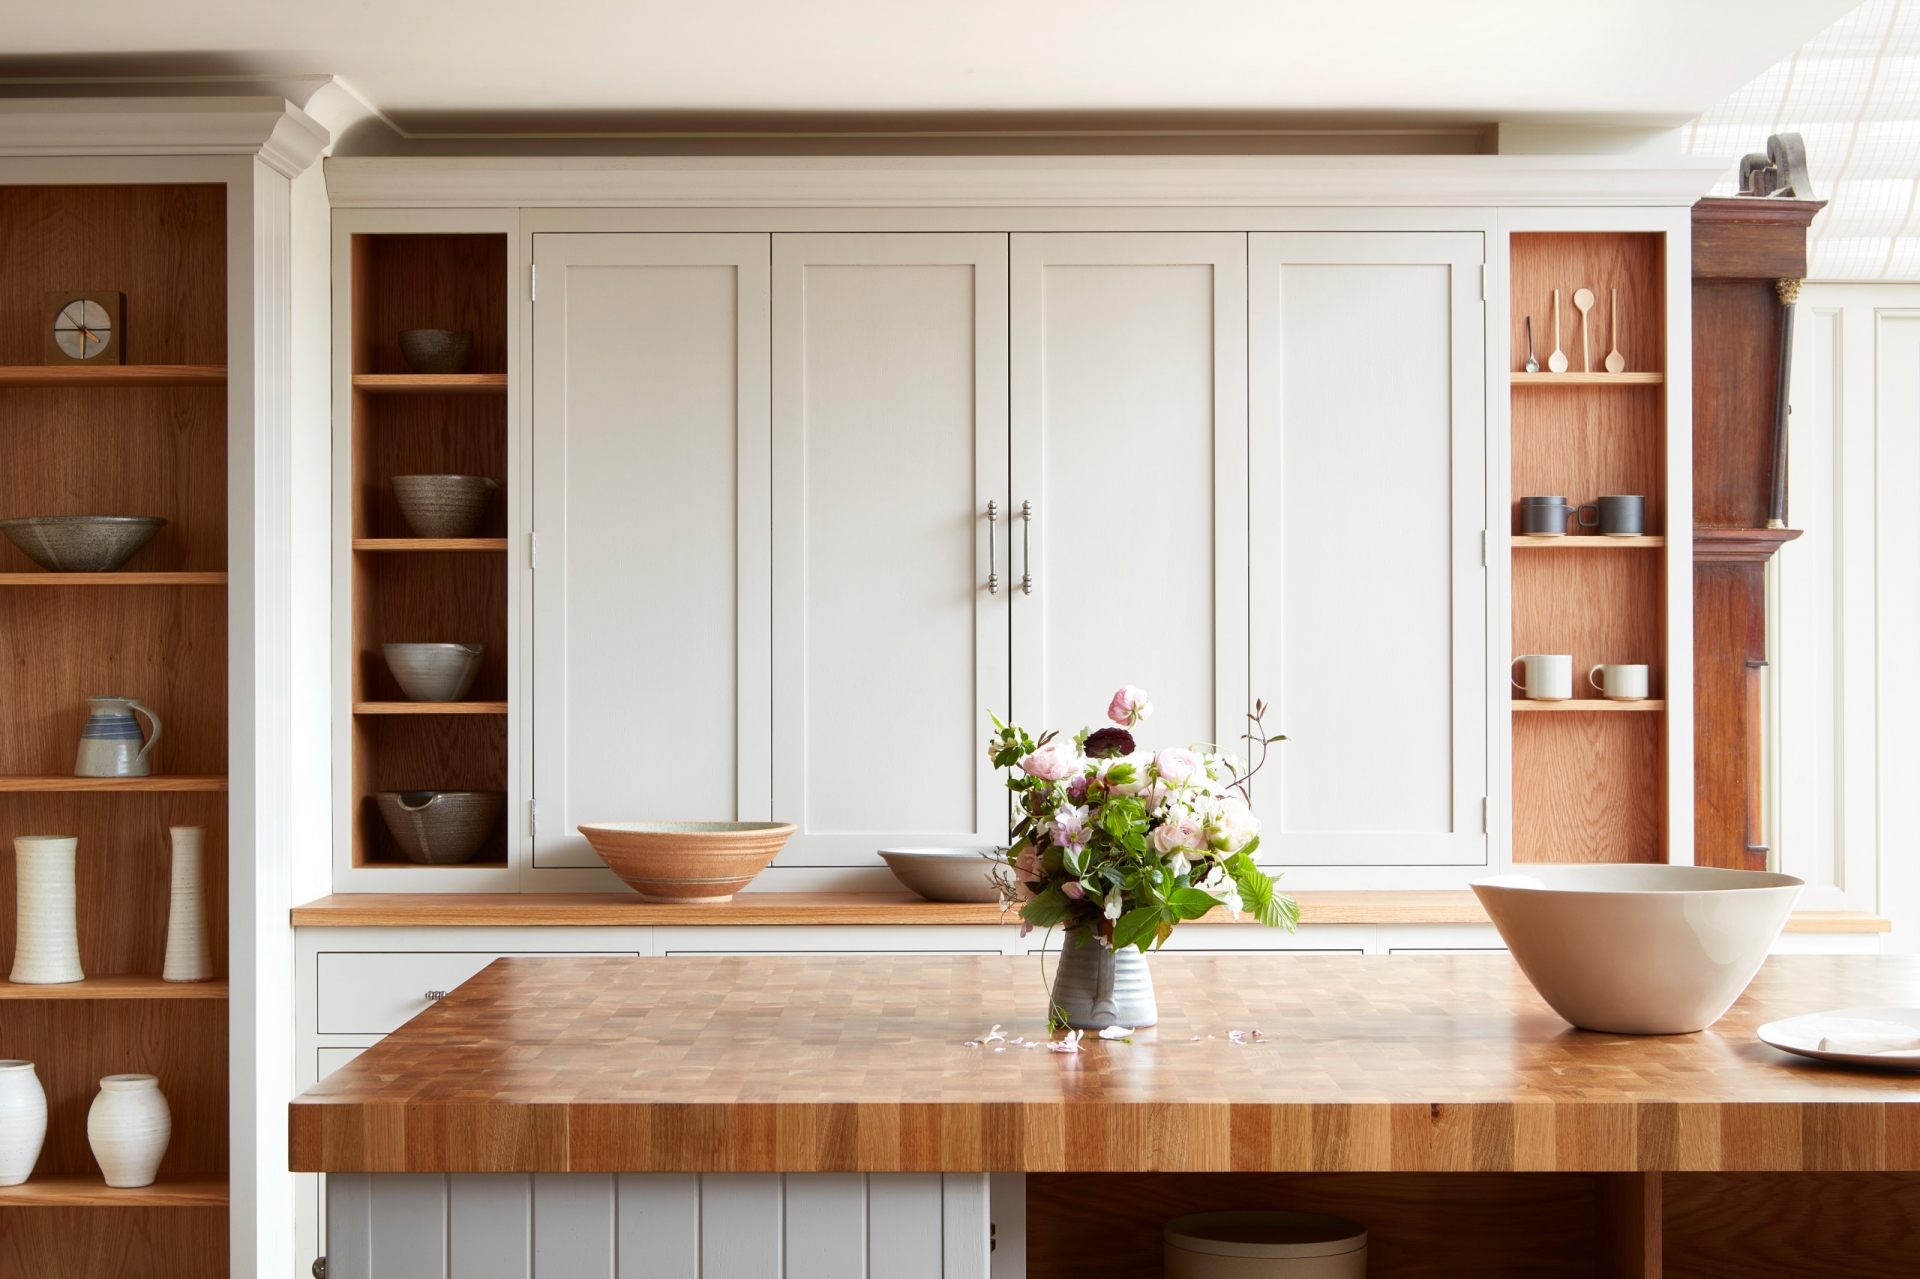 Đá cẩm thạch và granite đã trở thành lựa chọn quen thuộc cho mặt bàn bếp. Tuy nhiên, hãy nhìn phòng bếp này, gỗ thực sự là lựa chọn ấn tượng, đặc biệt khi đã qua xử lý thì bạn có thể yên tâm sử dụng ở môi trường ẩm ướt.